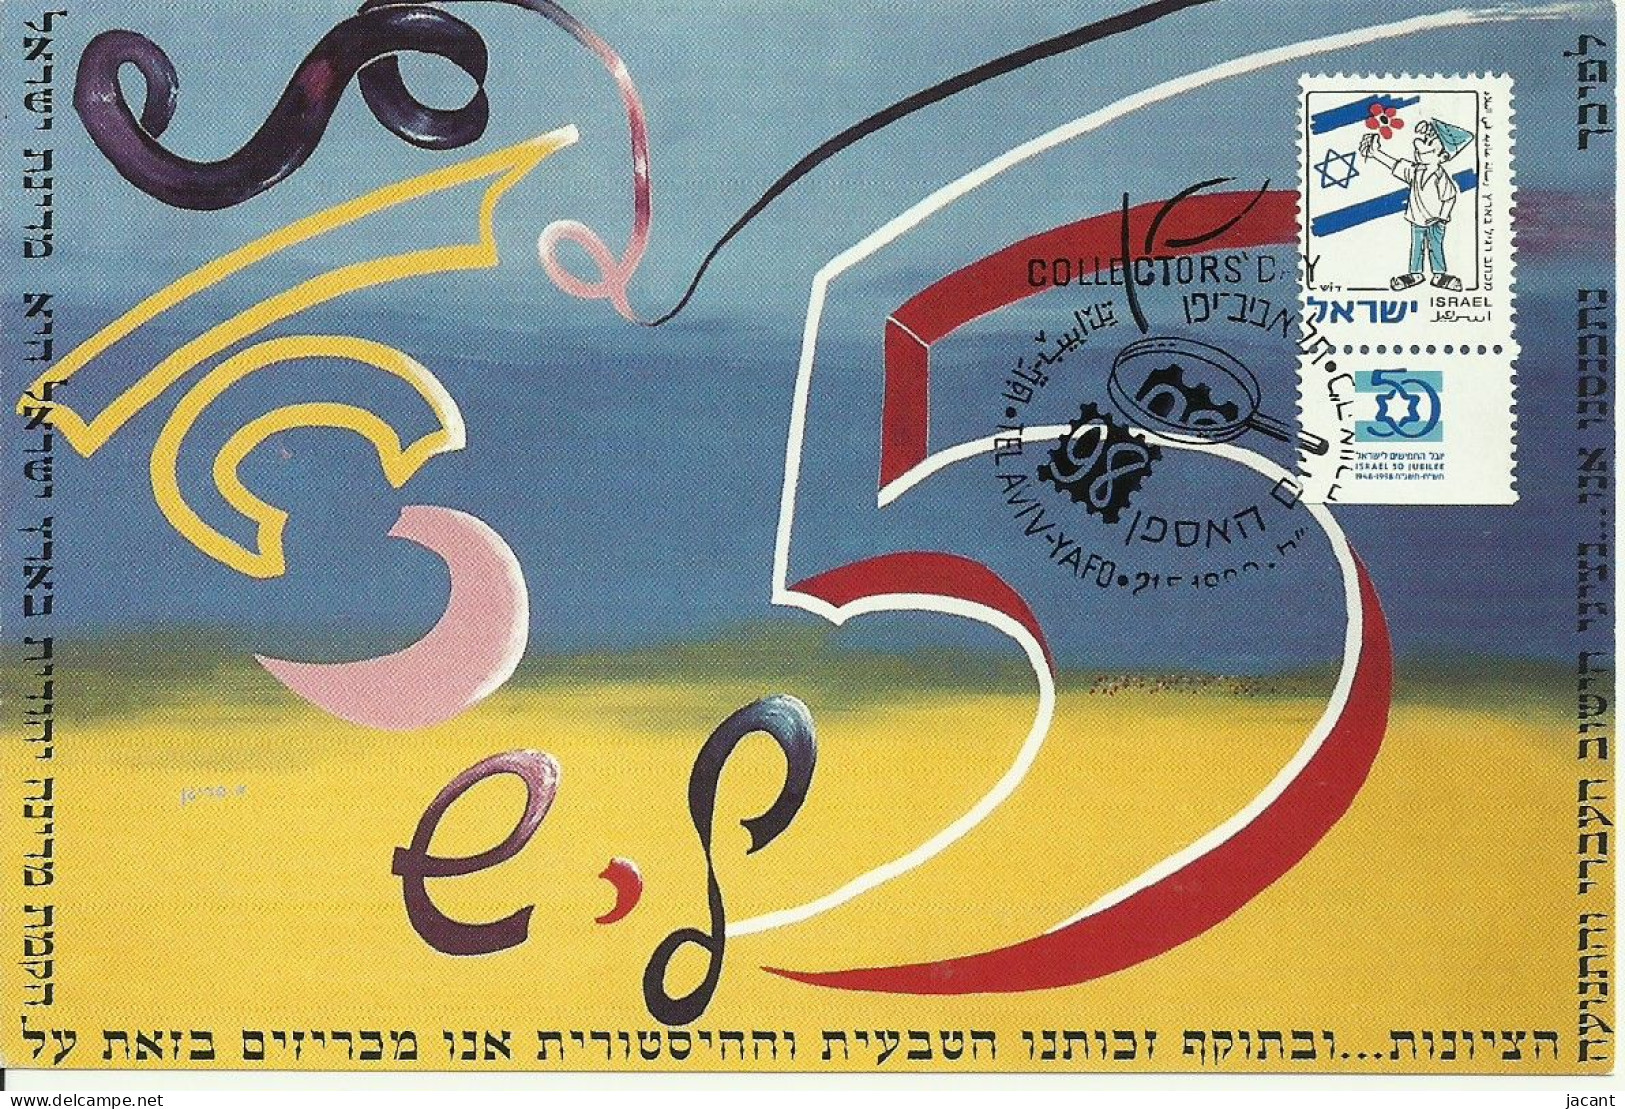 Carte Maximum - Israel - 50 Jubilee - Maximumkarten